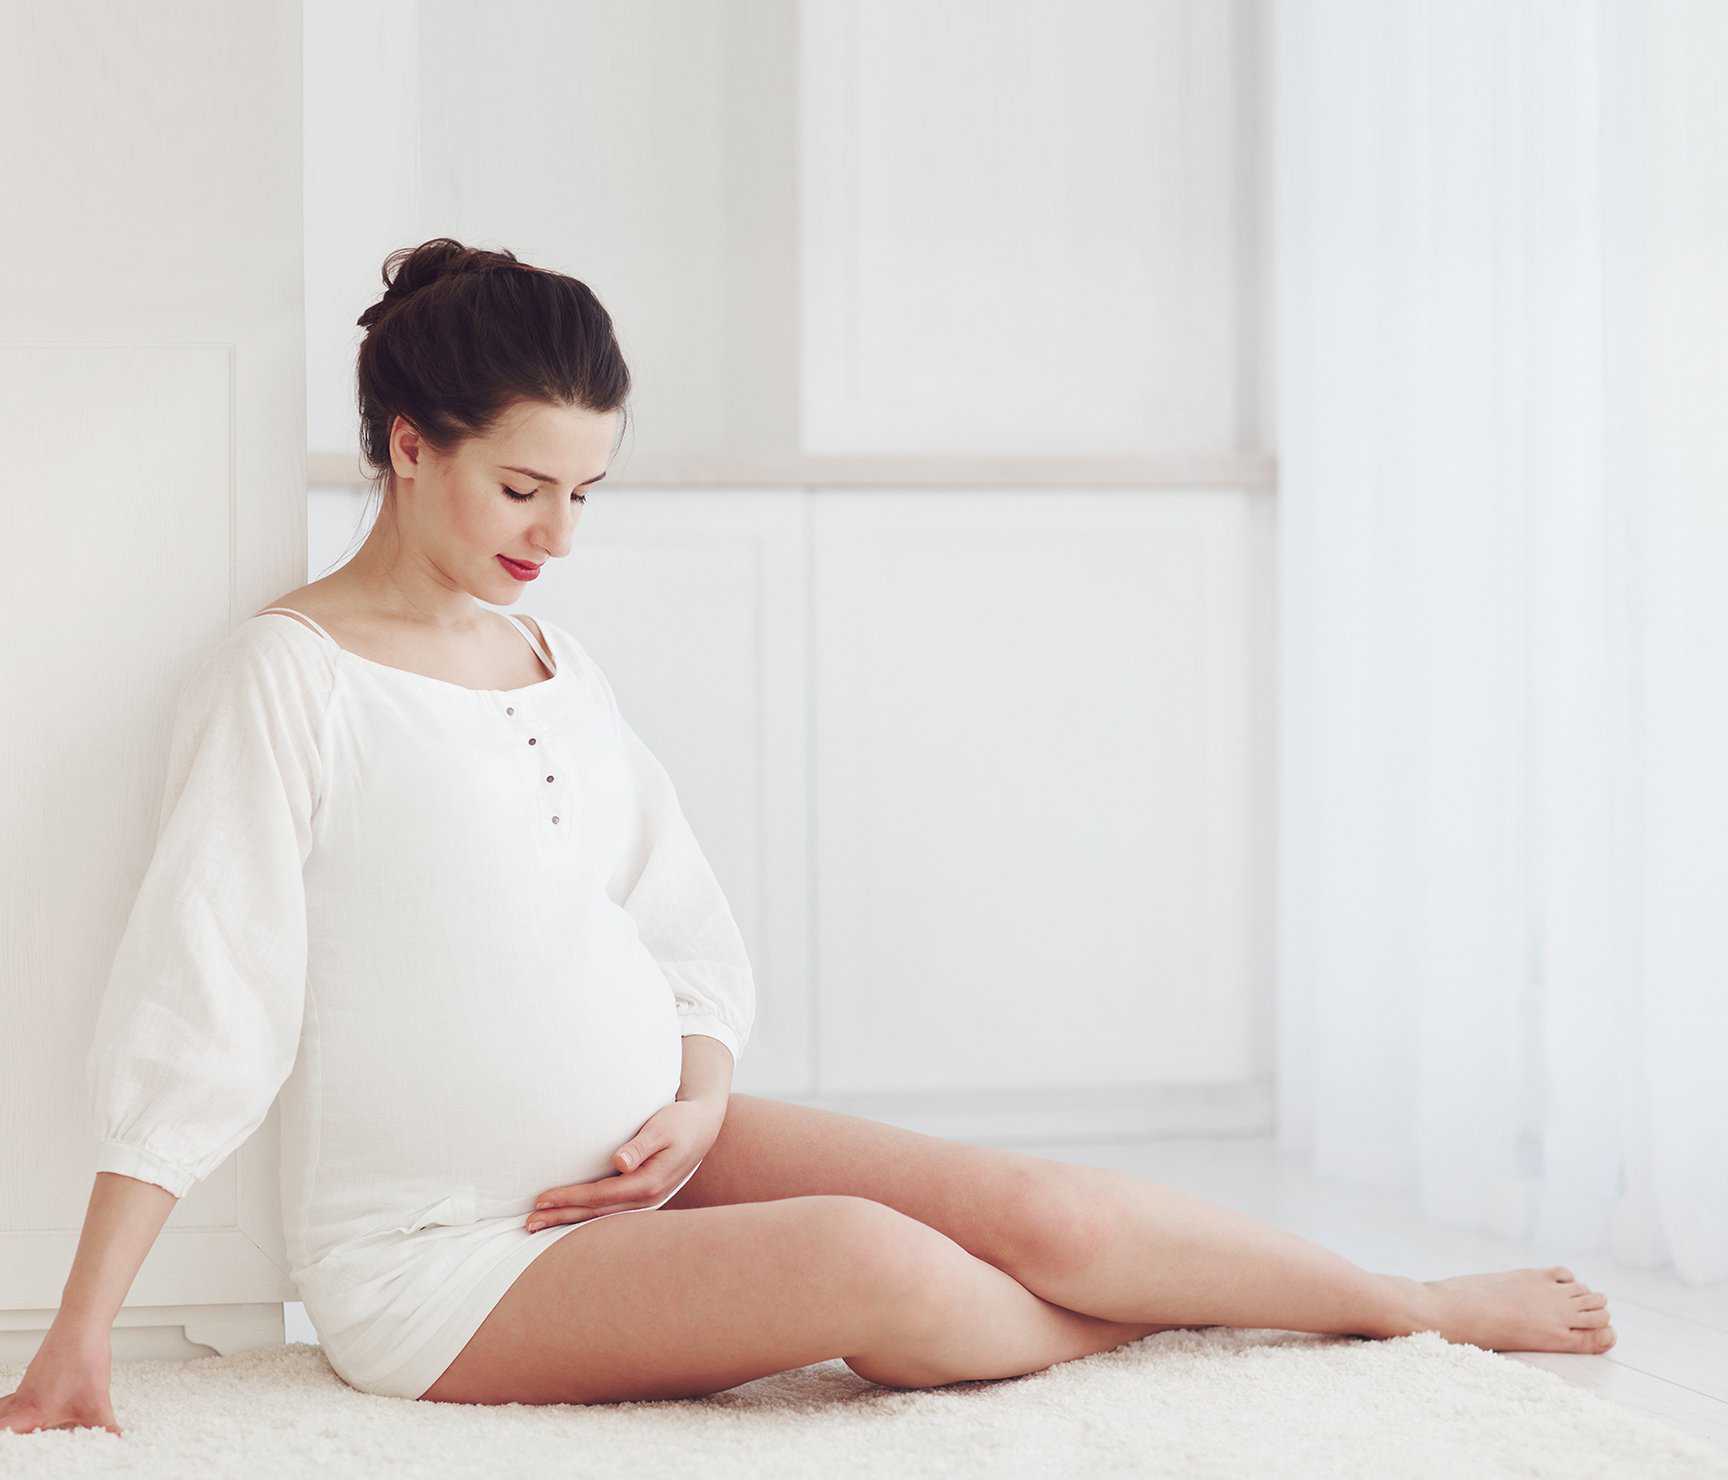 切除子宫不会怀孕_切除子宫还会怀孕_泉州助孕提示多囊卵巢综合征在做泰国试